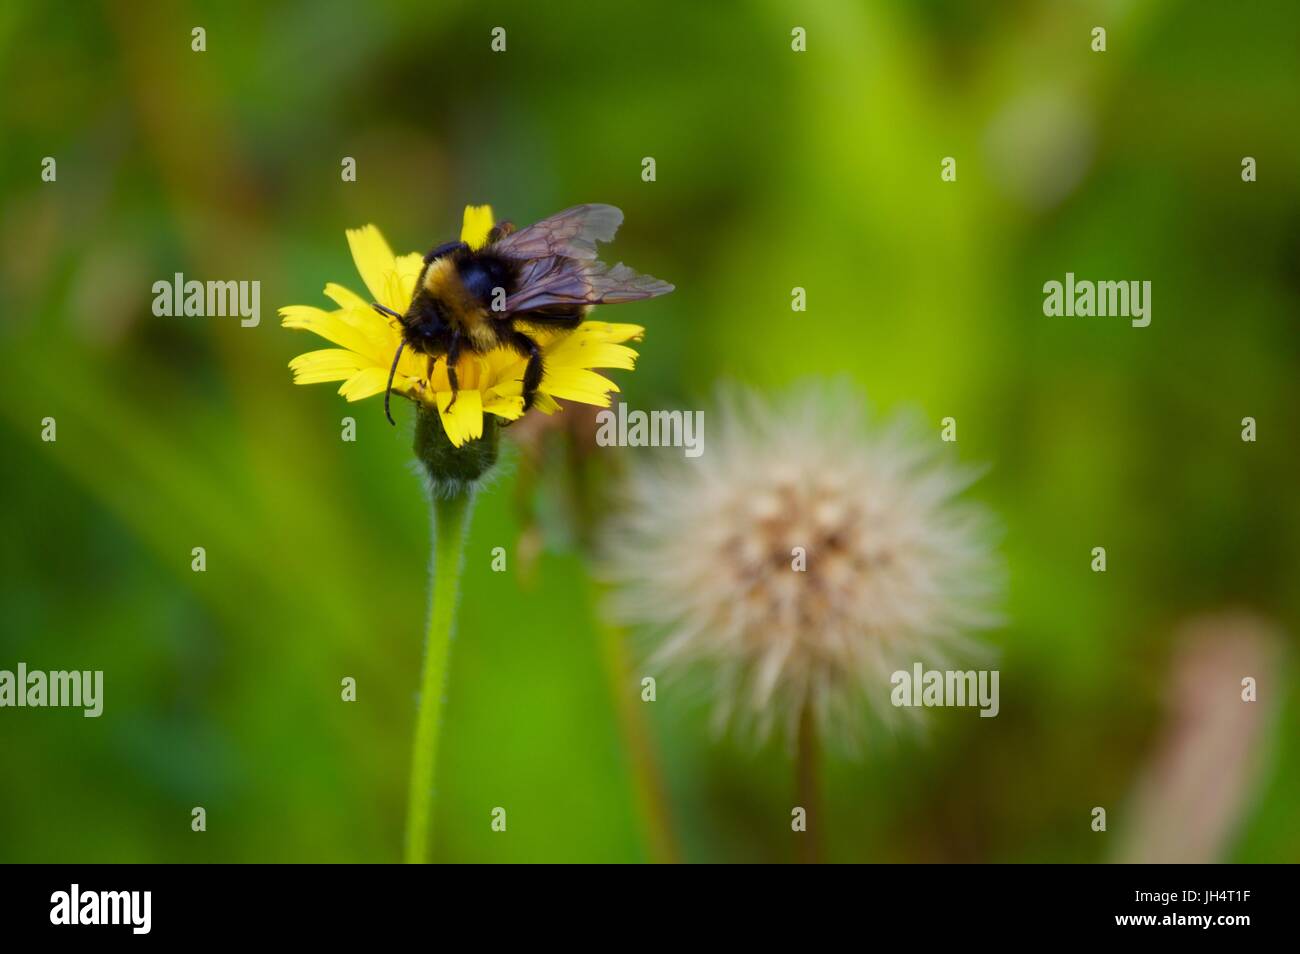 Bumblebee on flower, Boxmoor Stock Photo